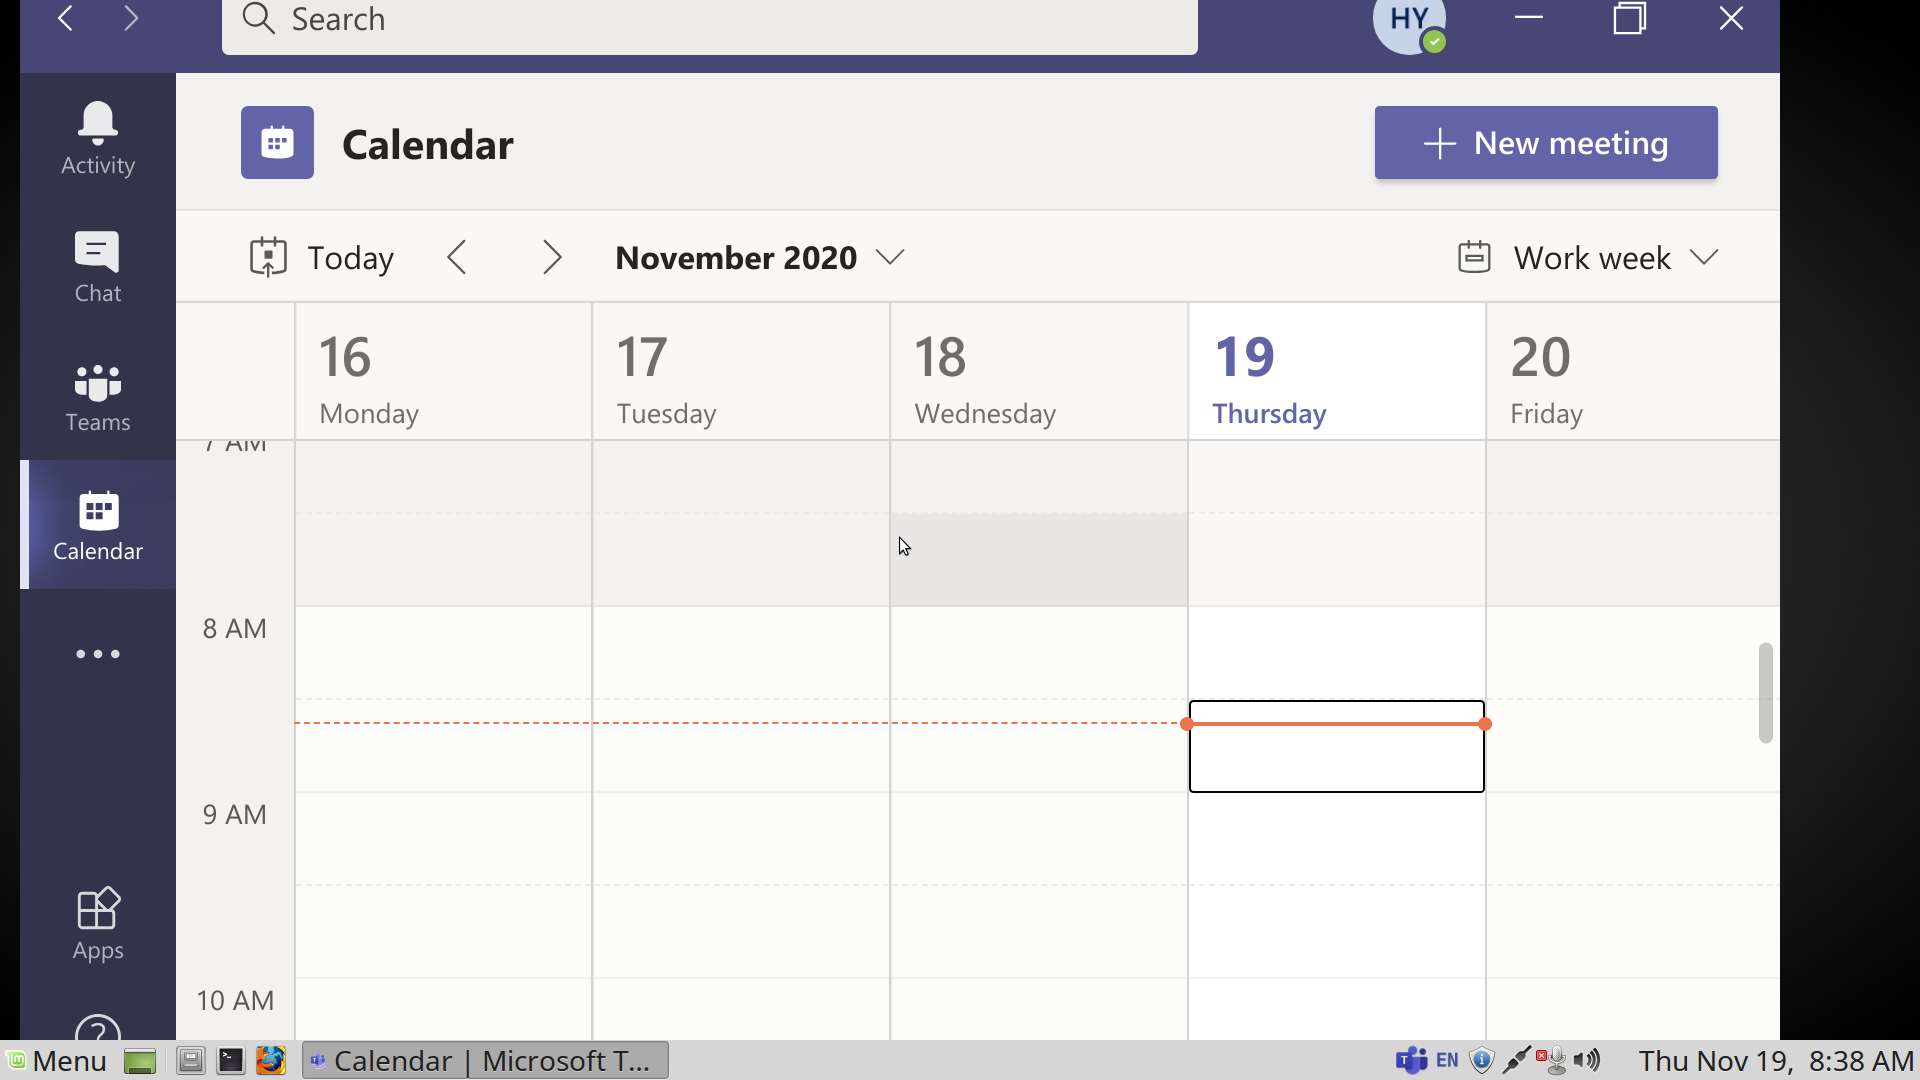 Microsoft Teams Linux Calendar Doesn't Work Missed Meetings! rtt